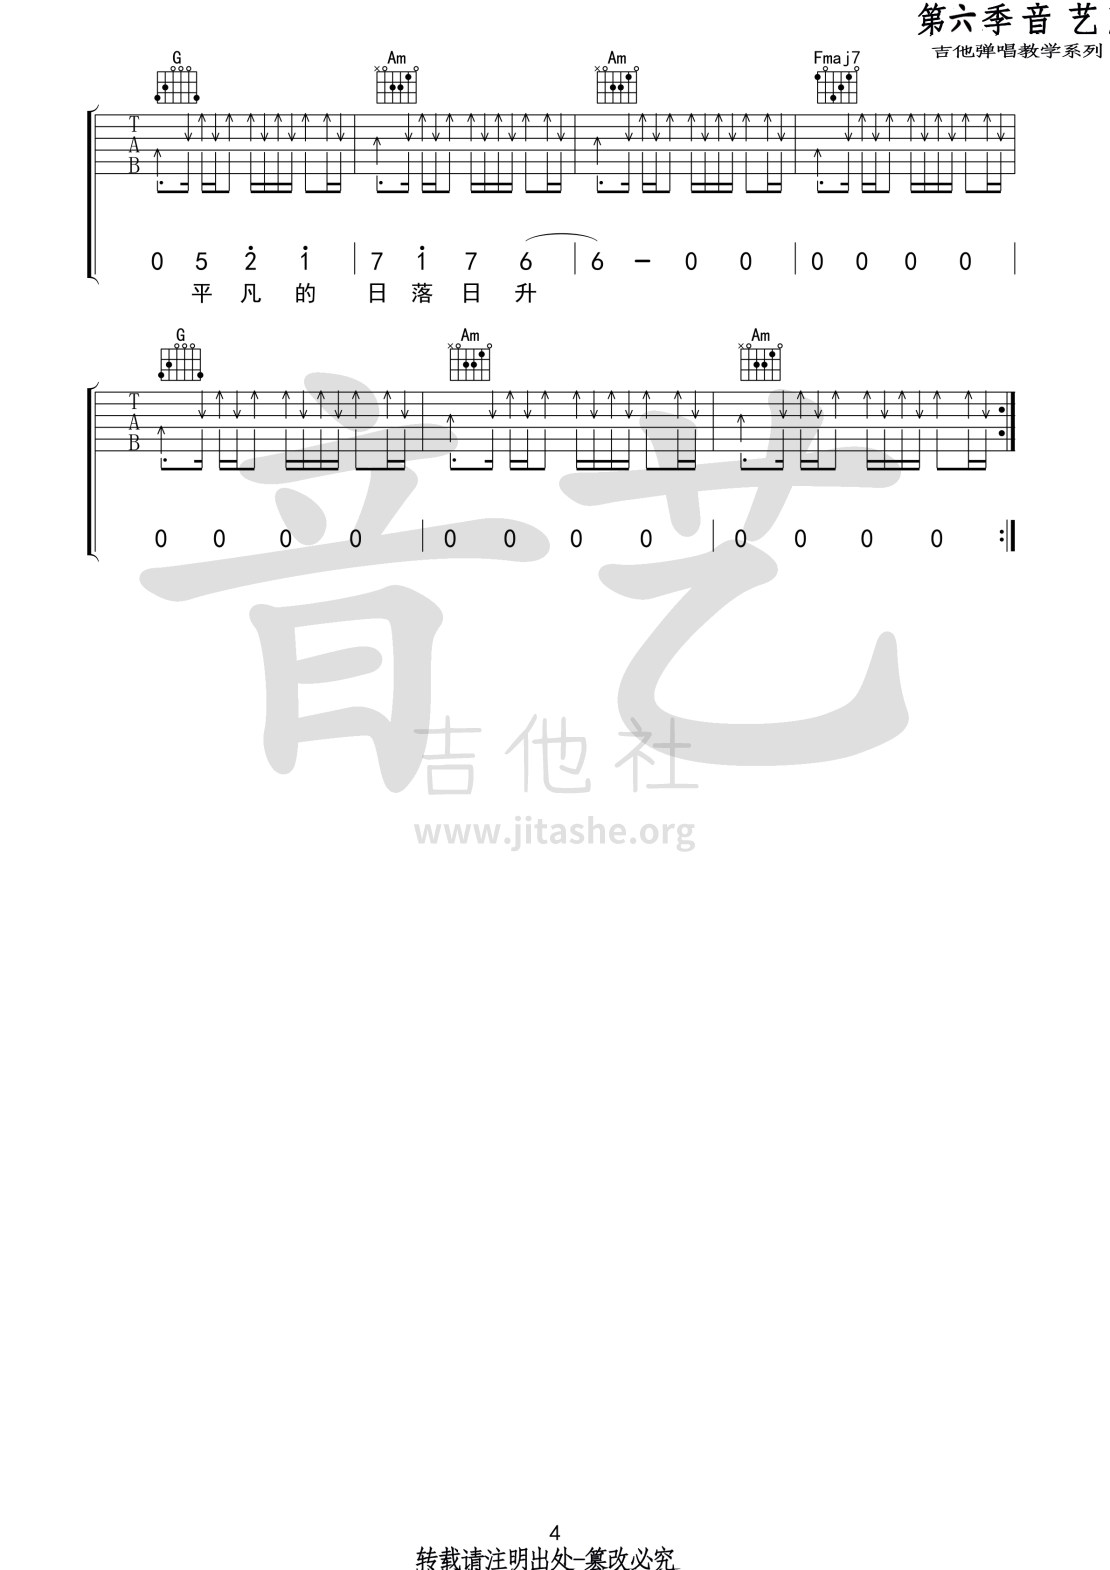 吉他专家编配【暗河 C调精选版吉他谱】_在线免费打印下载-爱弹琴乐谱网